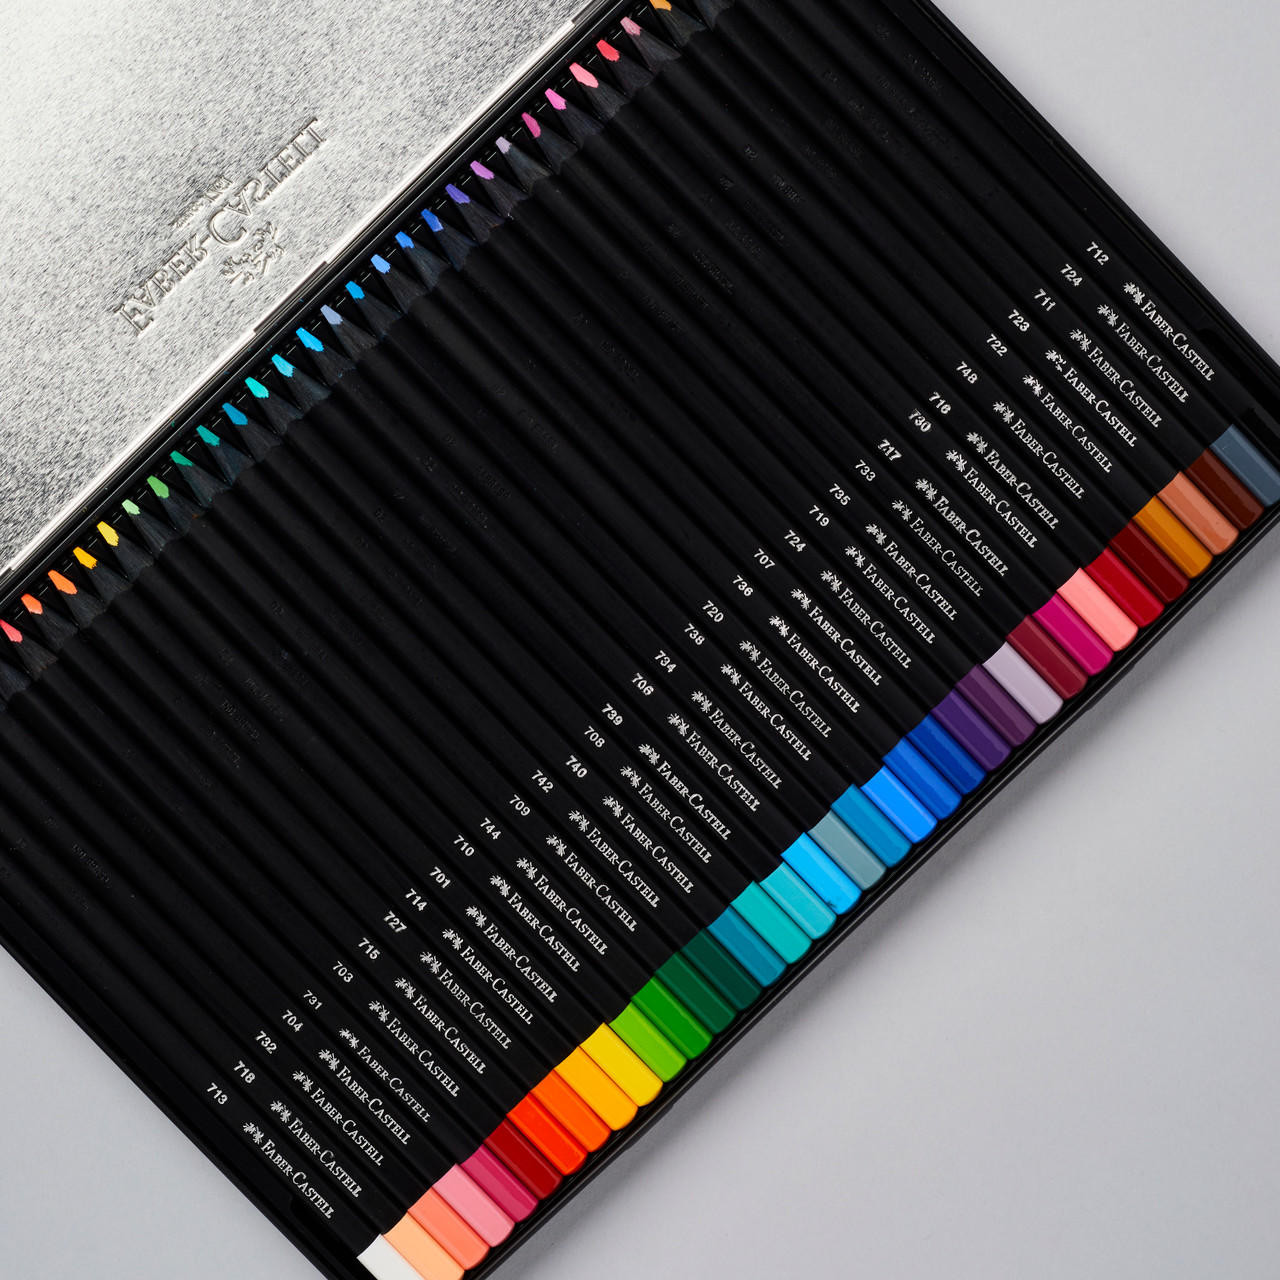 Faber Castell Black Edition Colour Pencils Set of 36